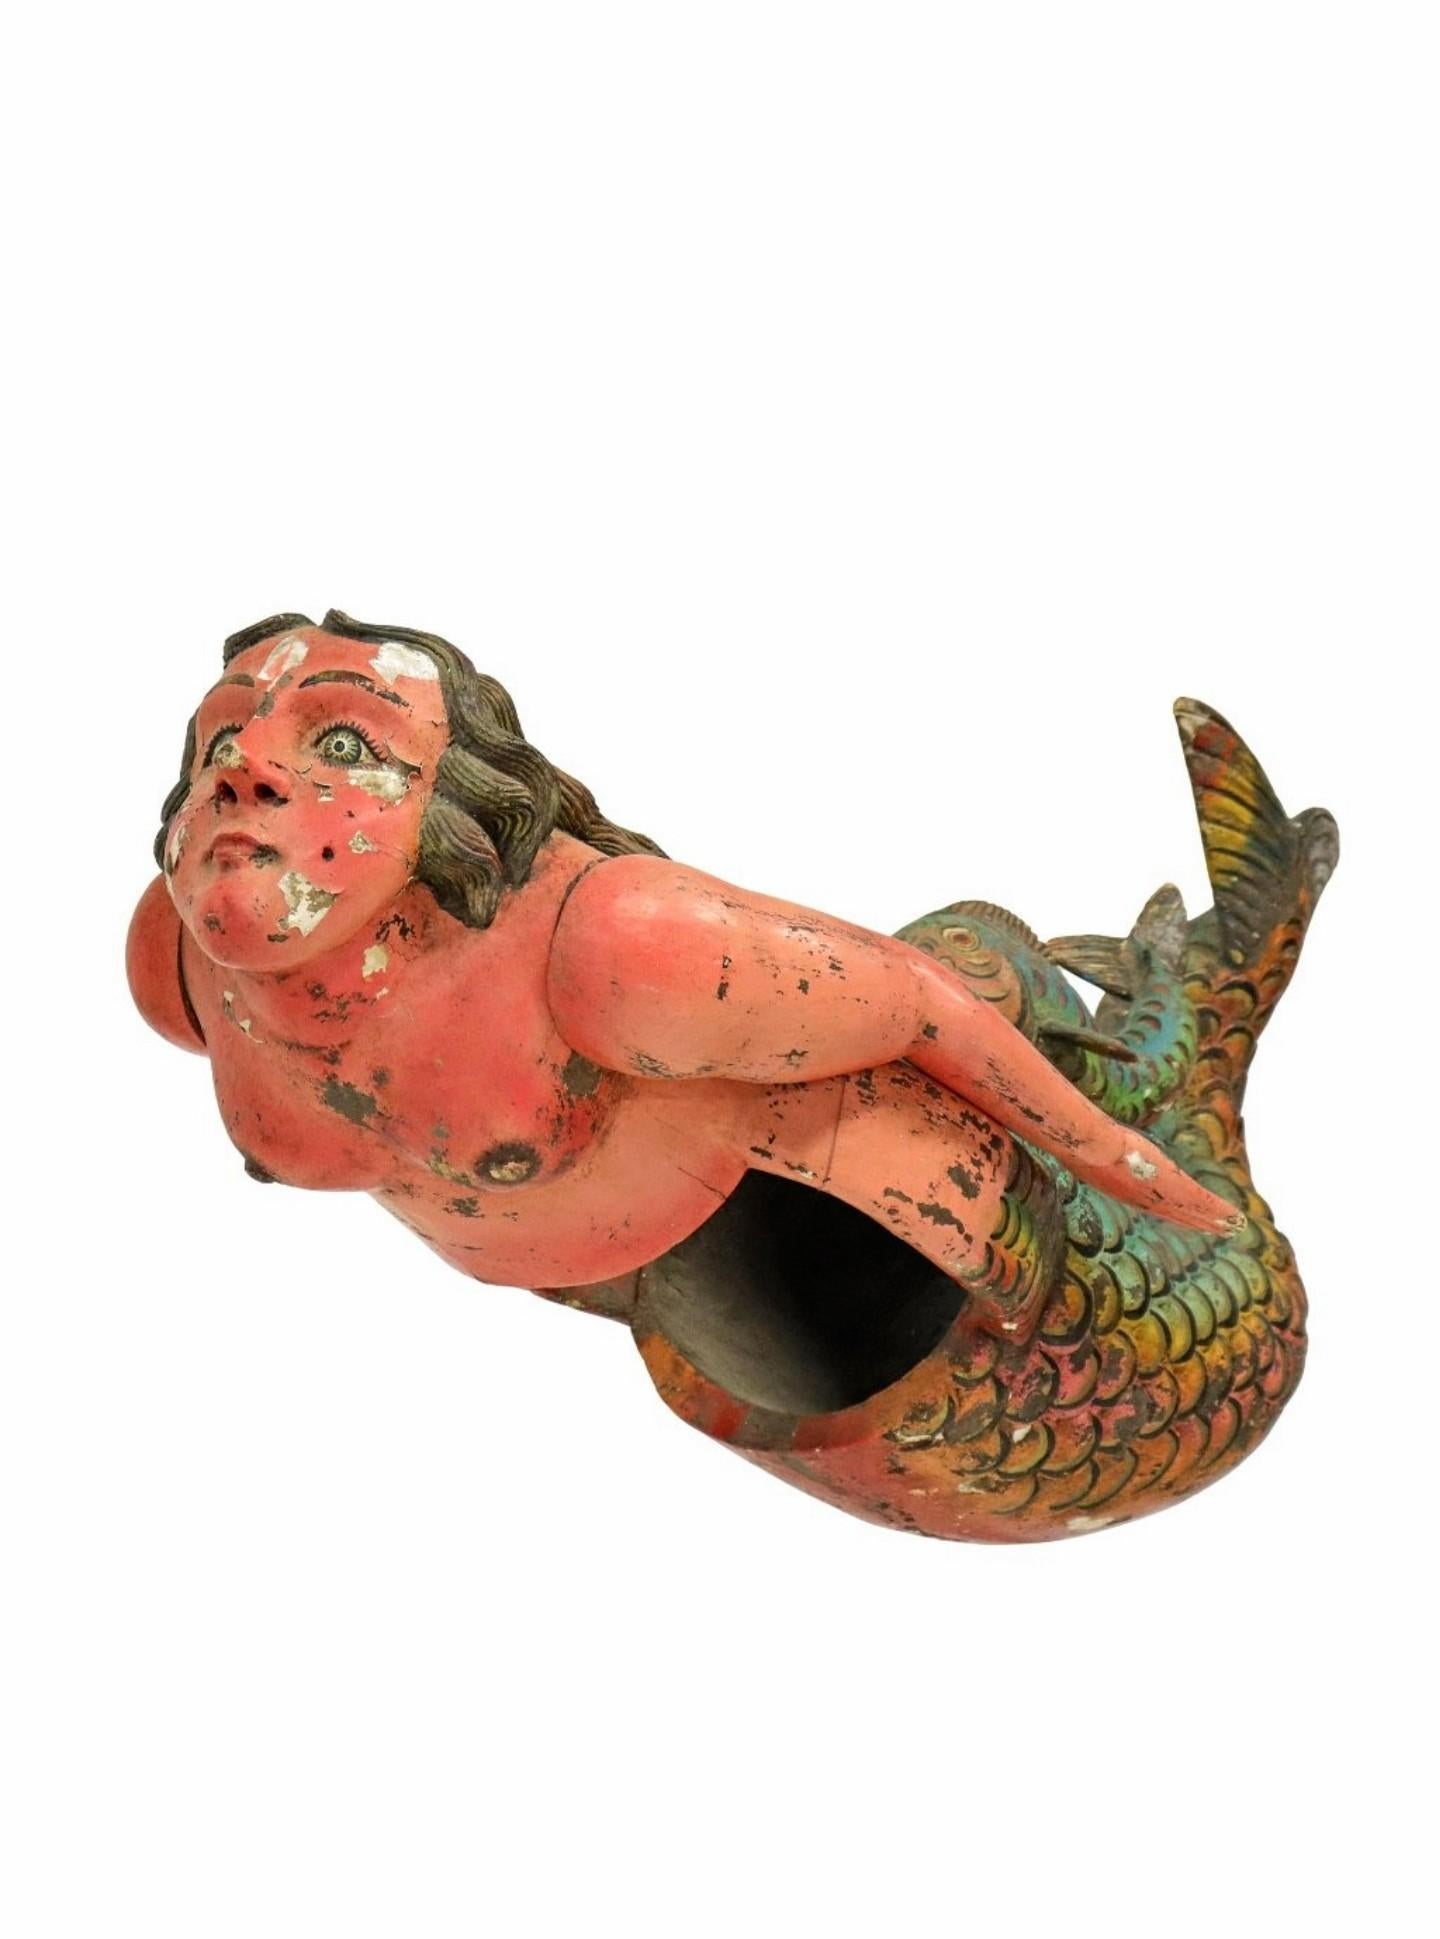 Eine prächtige, lebensgroße, handgeschnitzte und bemalte mexikanische Volkstanzmaske in Form einer Meerjungfrau aus dem frühen 20. Jahrhundert, die wahrscheinlich aus Guerrero, Mexiko, stammt.

Mit einer großen nackten weiblichen Form, exquisit